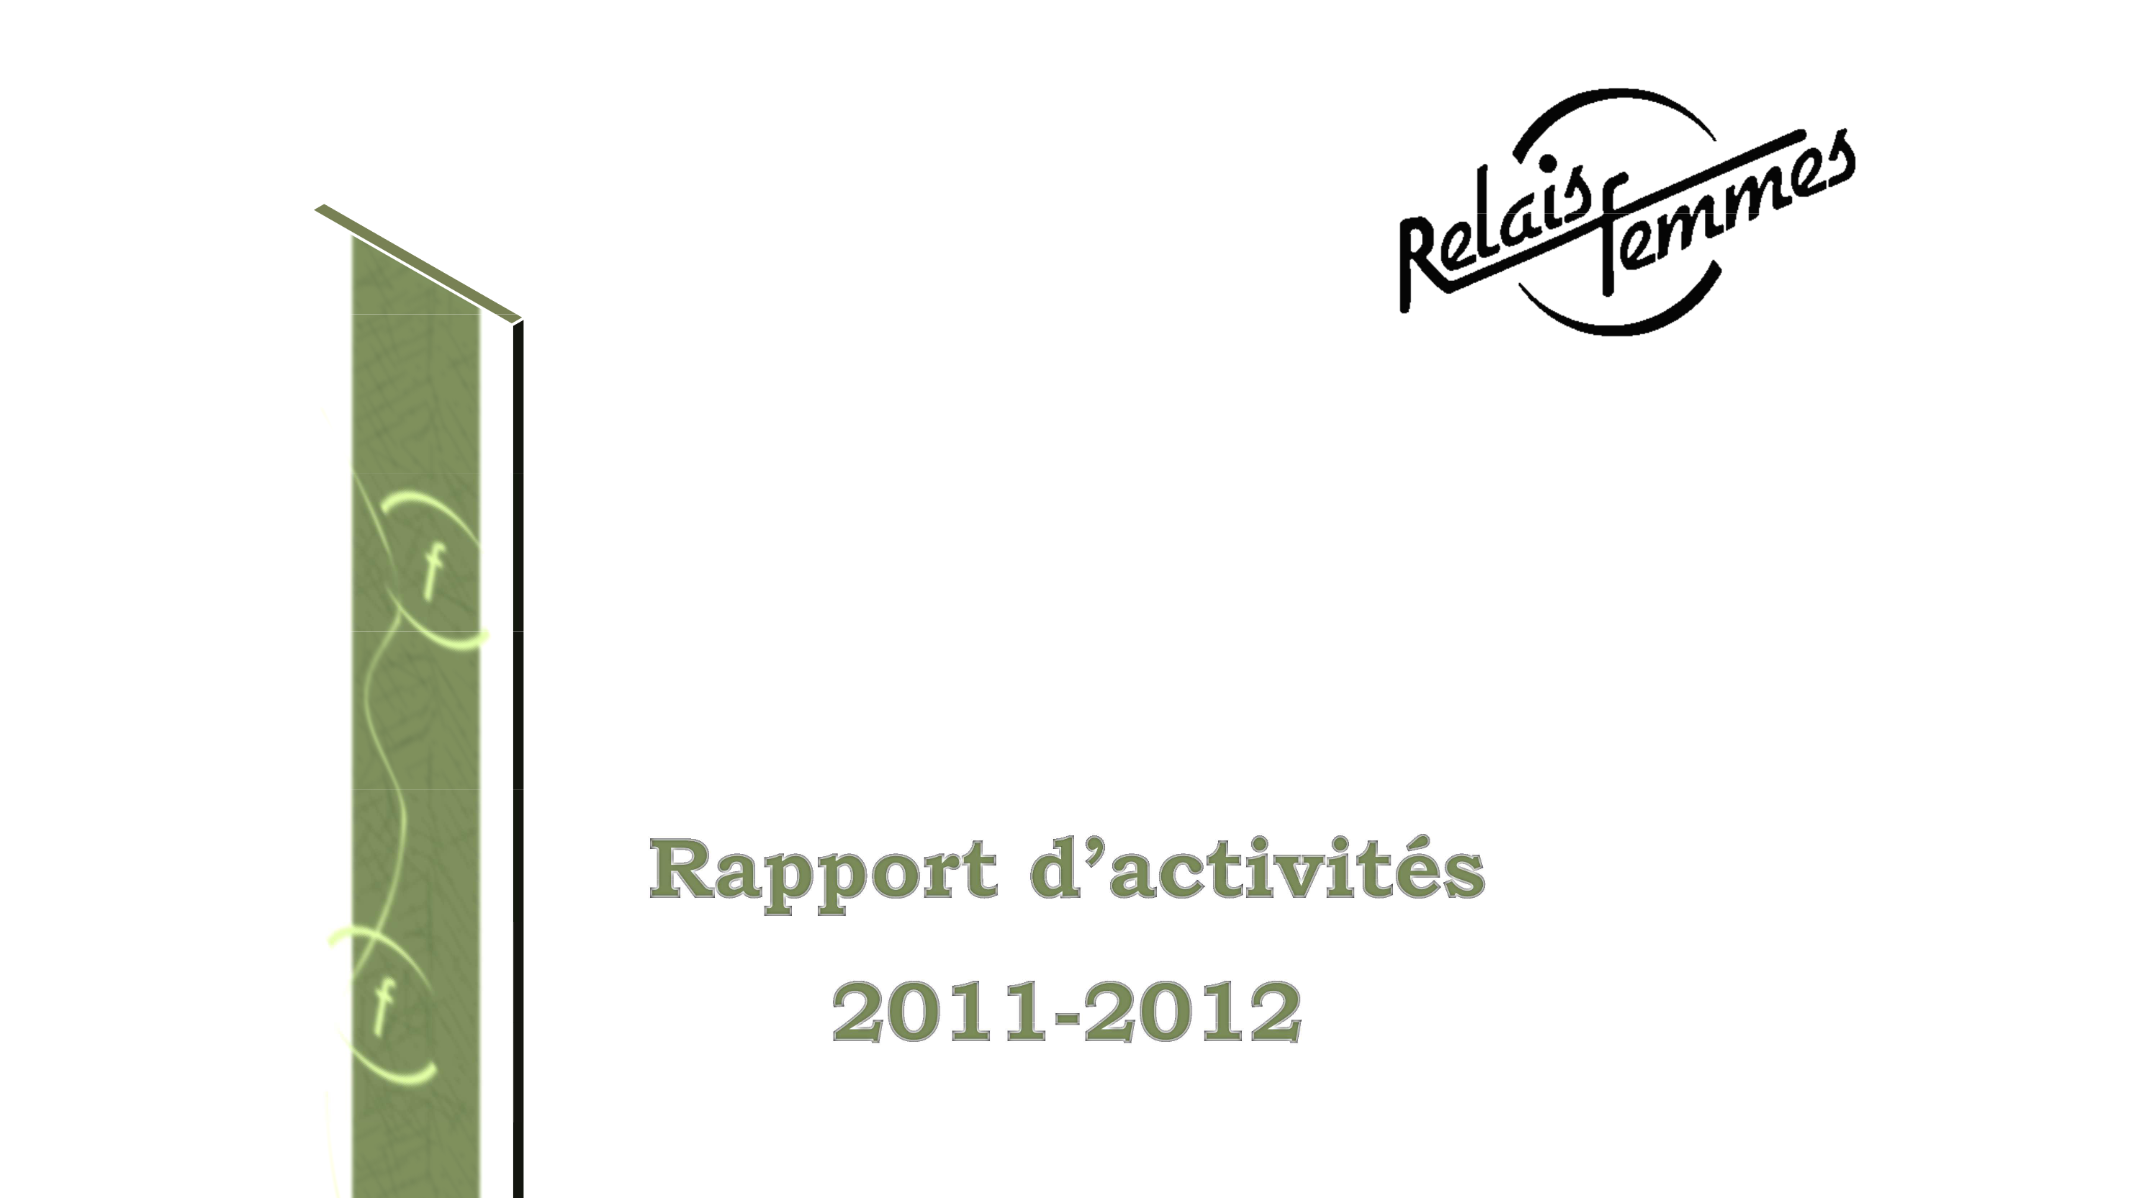 Rapports d'activités 2011-2012